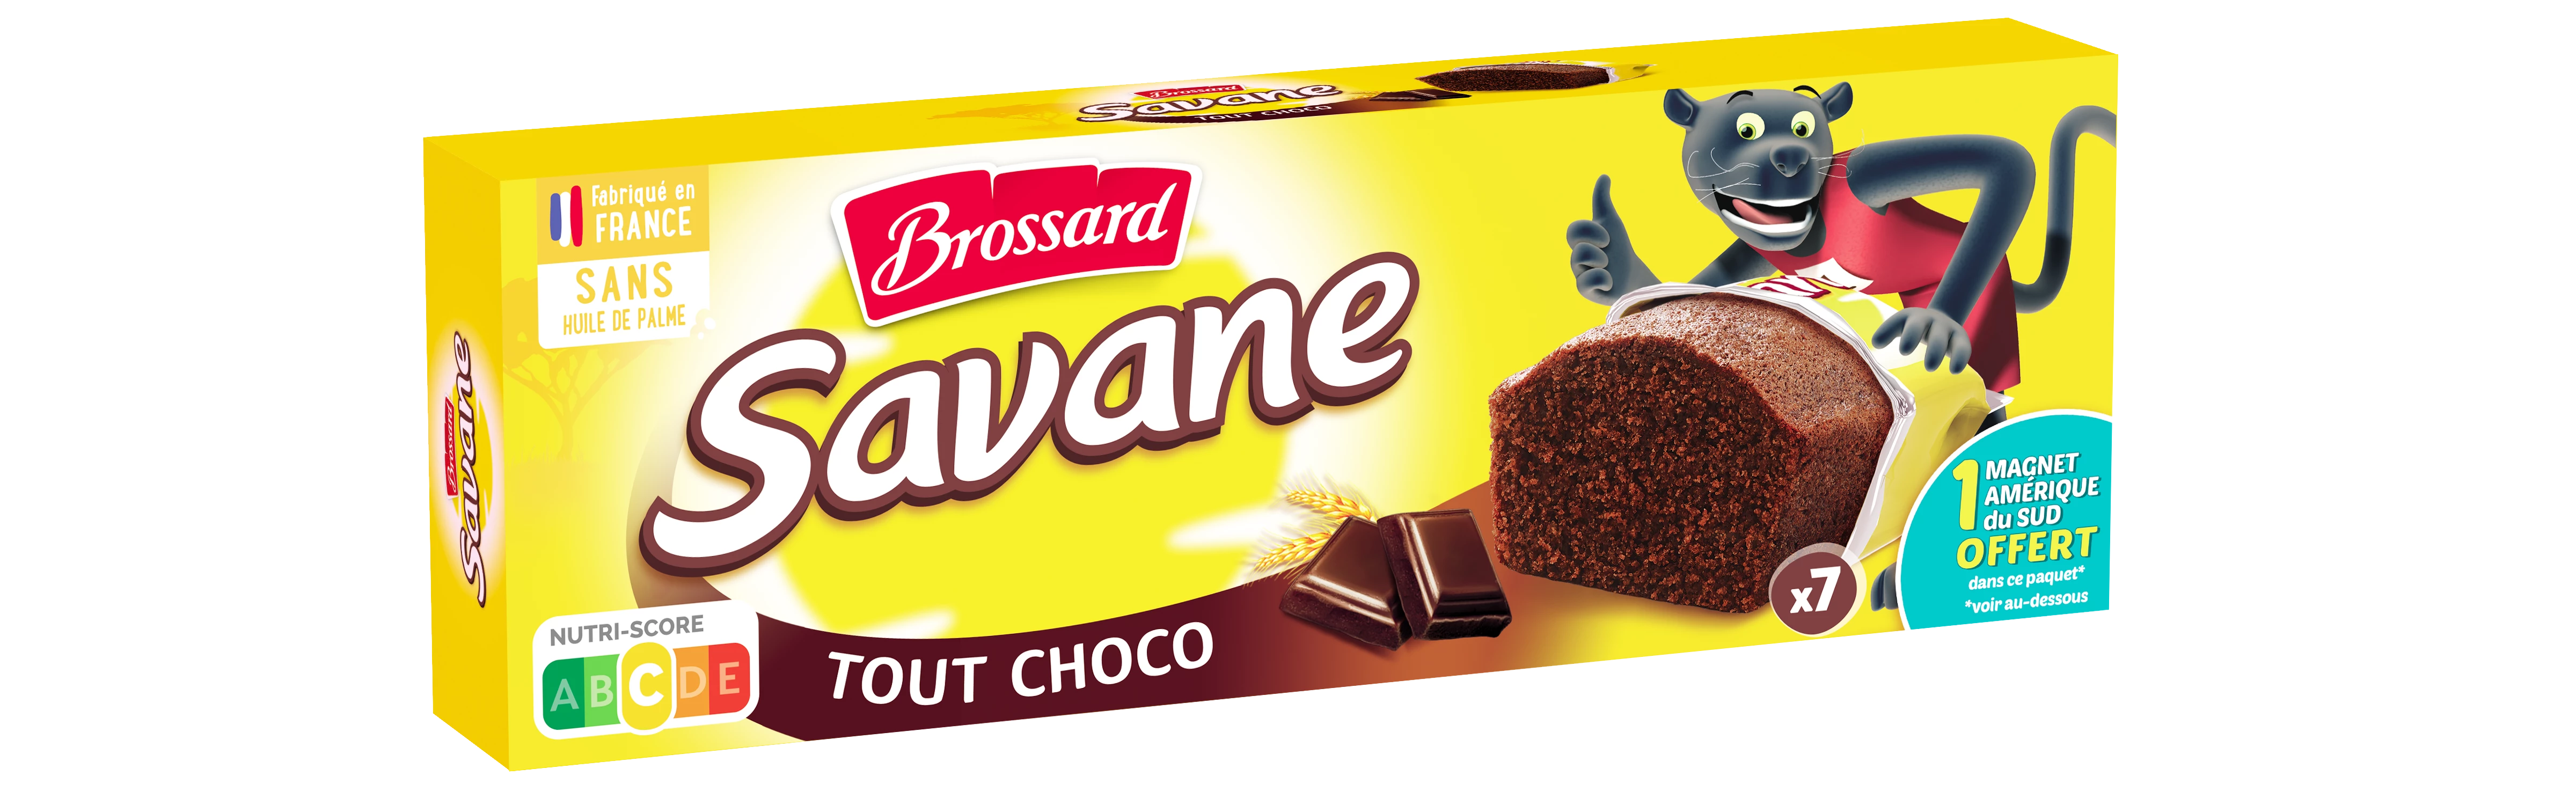 Savane Pocket Alle Choco X7 210g